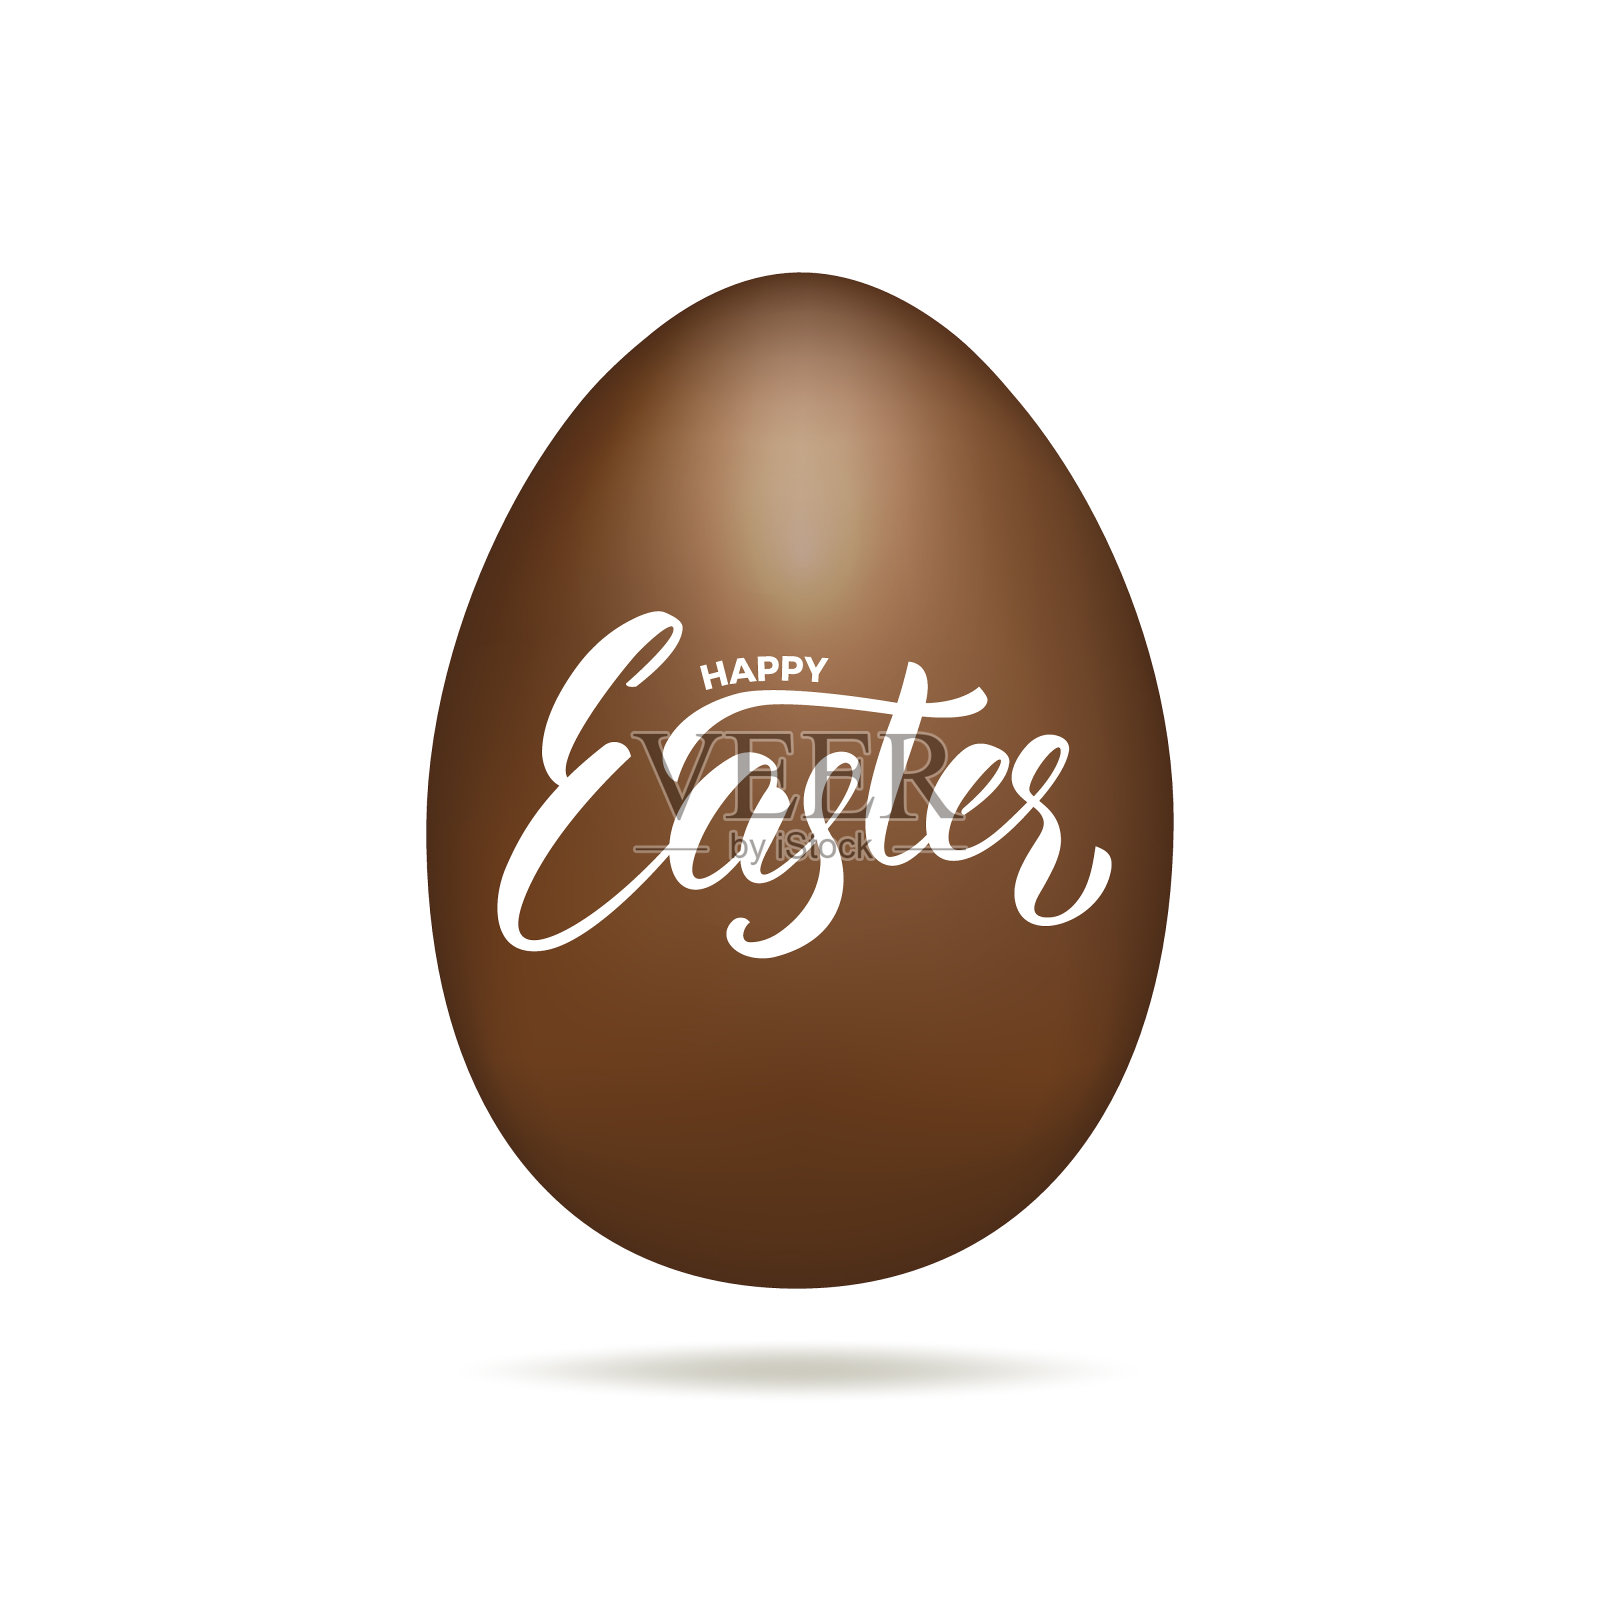 复活节彩蛋。写着“复活节快乐”字样的巧克力蛋。复活节节日设计元素插画图片素材